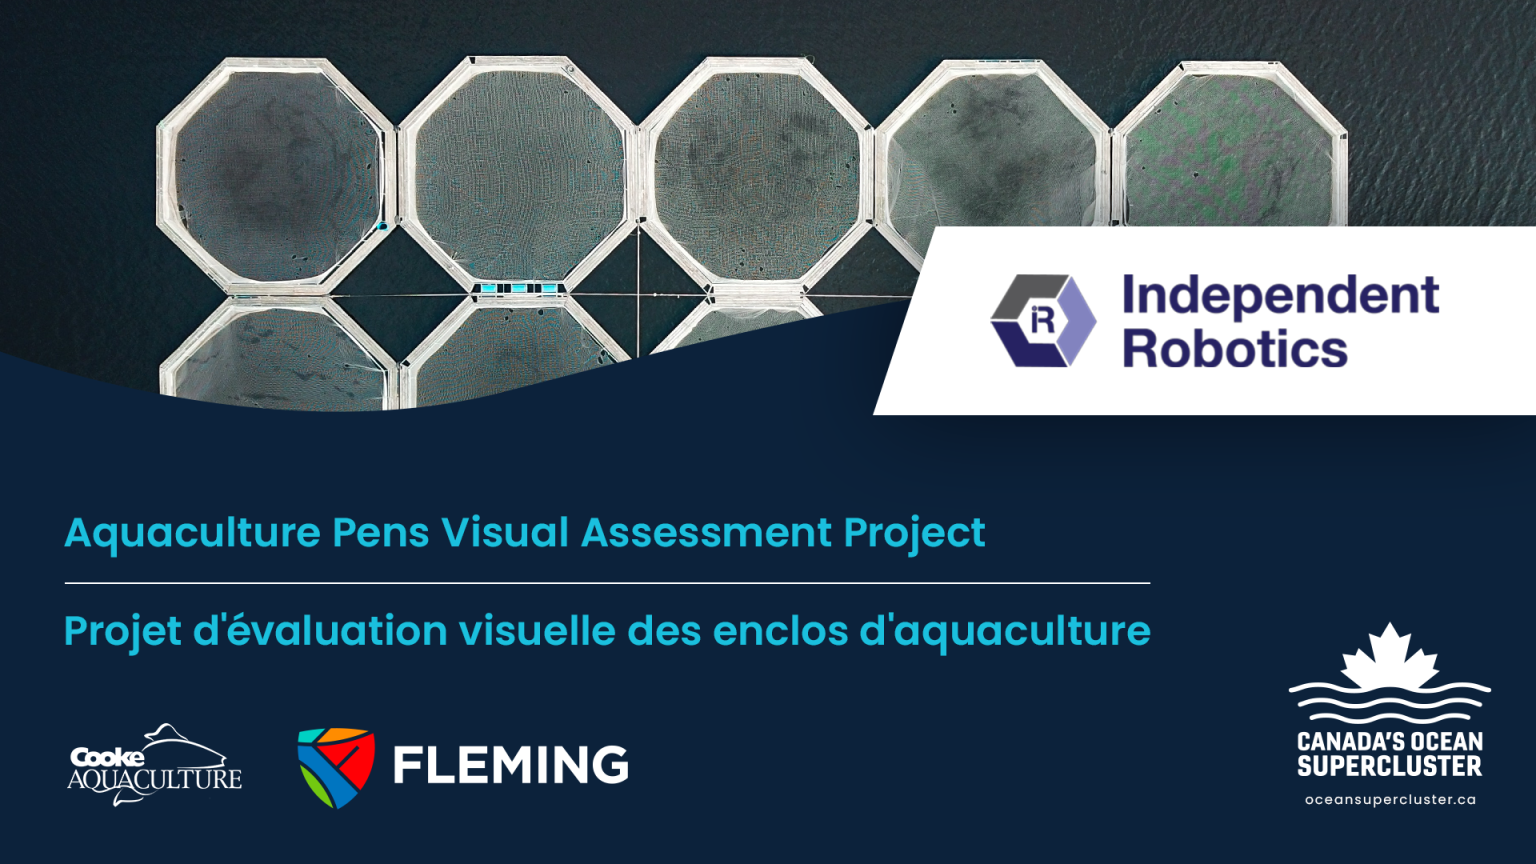 Canada’s Ocean Supercluster Announces Visual Assessment of Aquaculture Pens Project